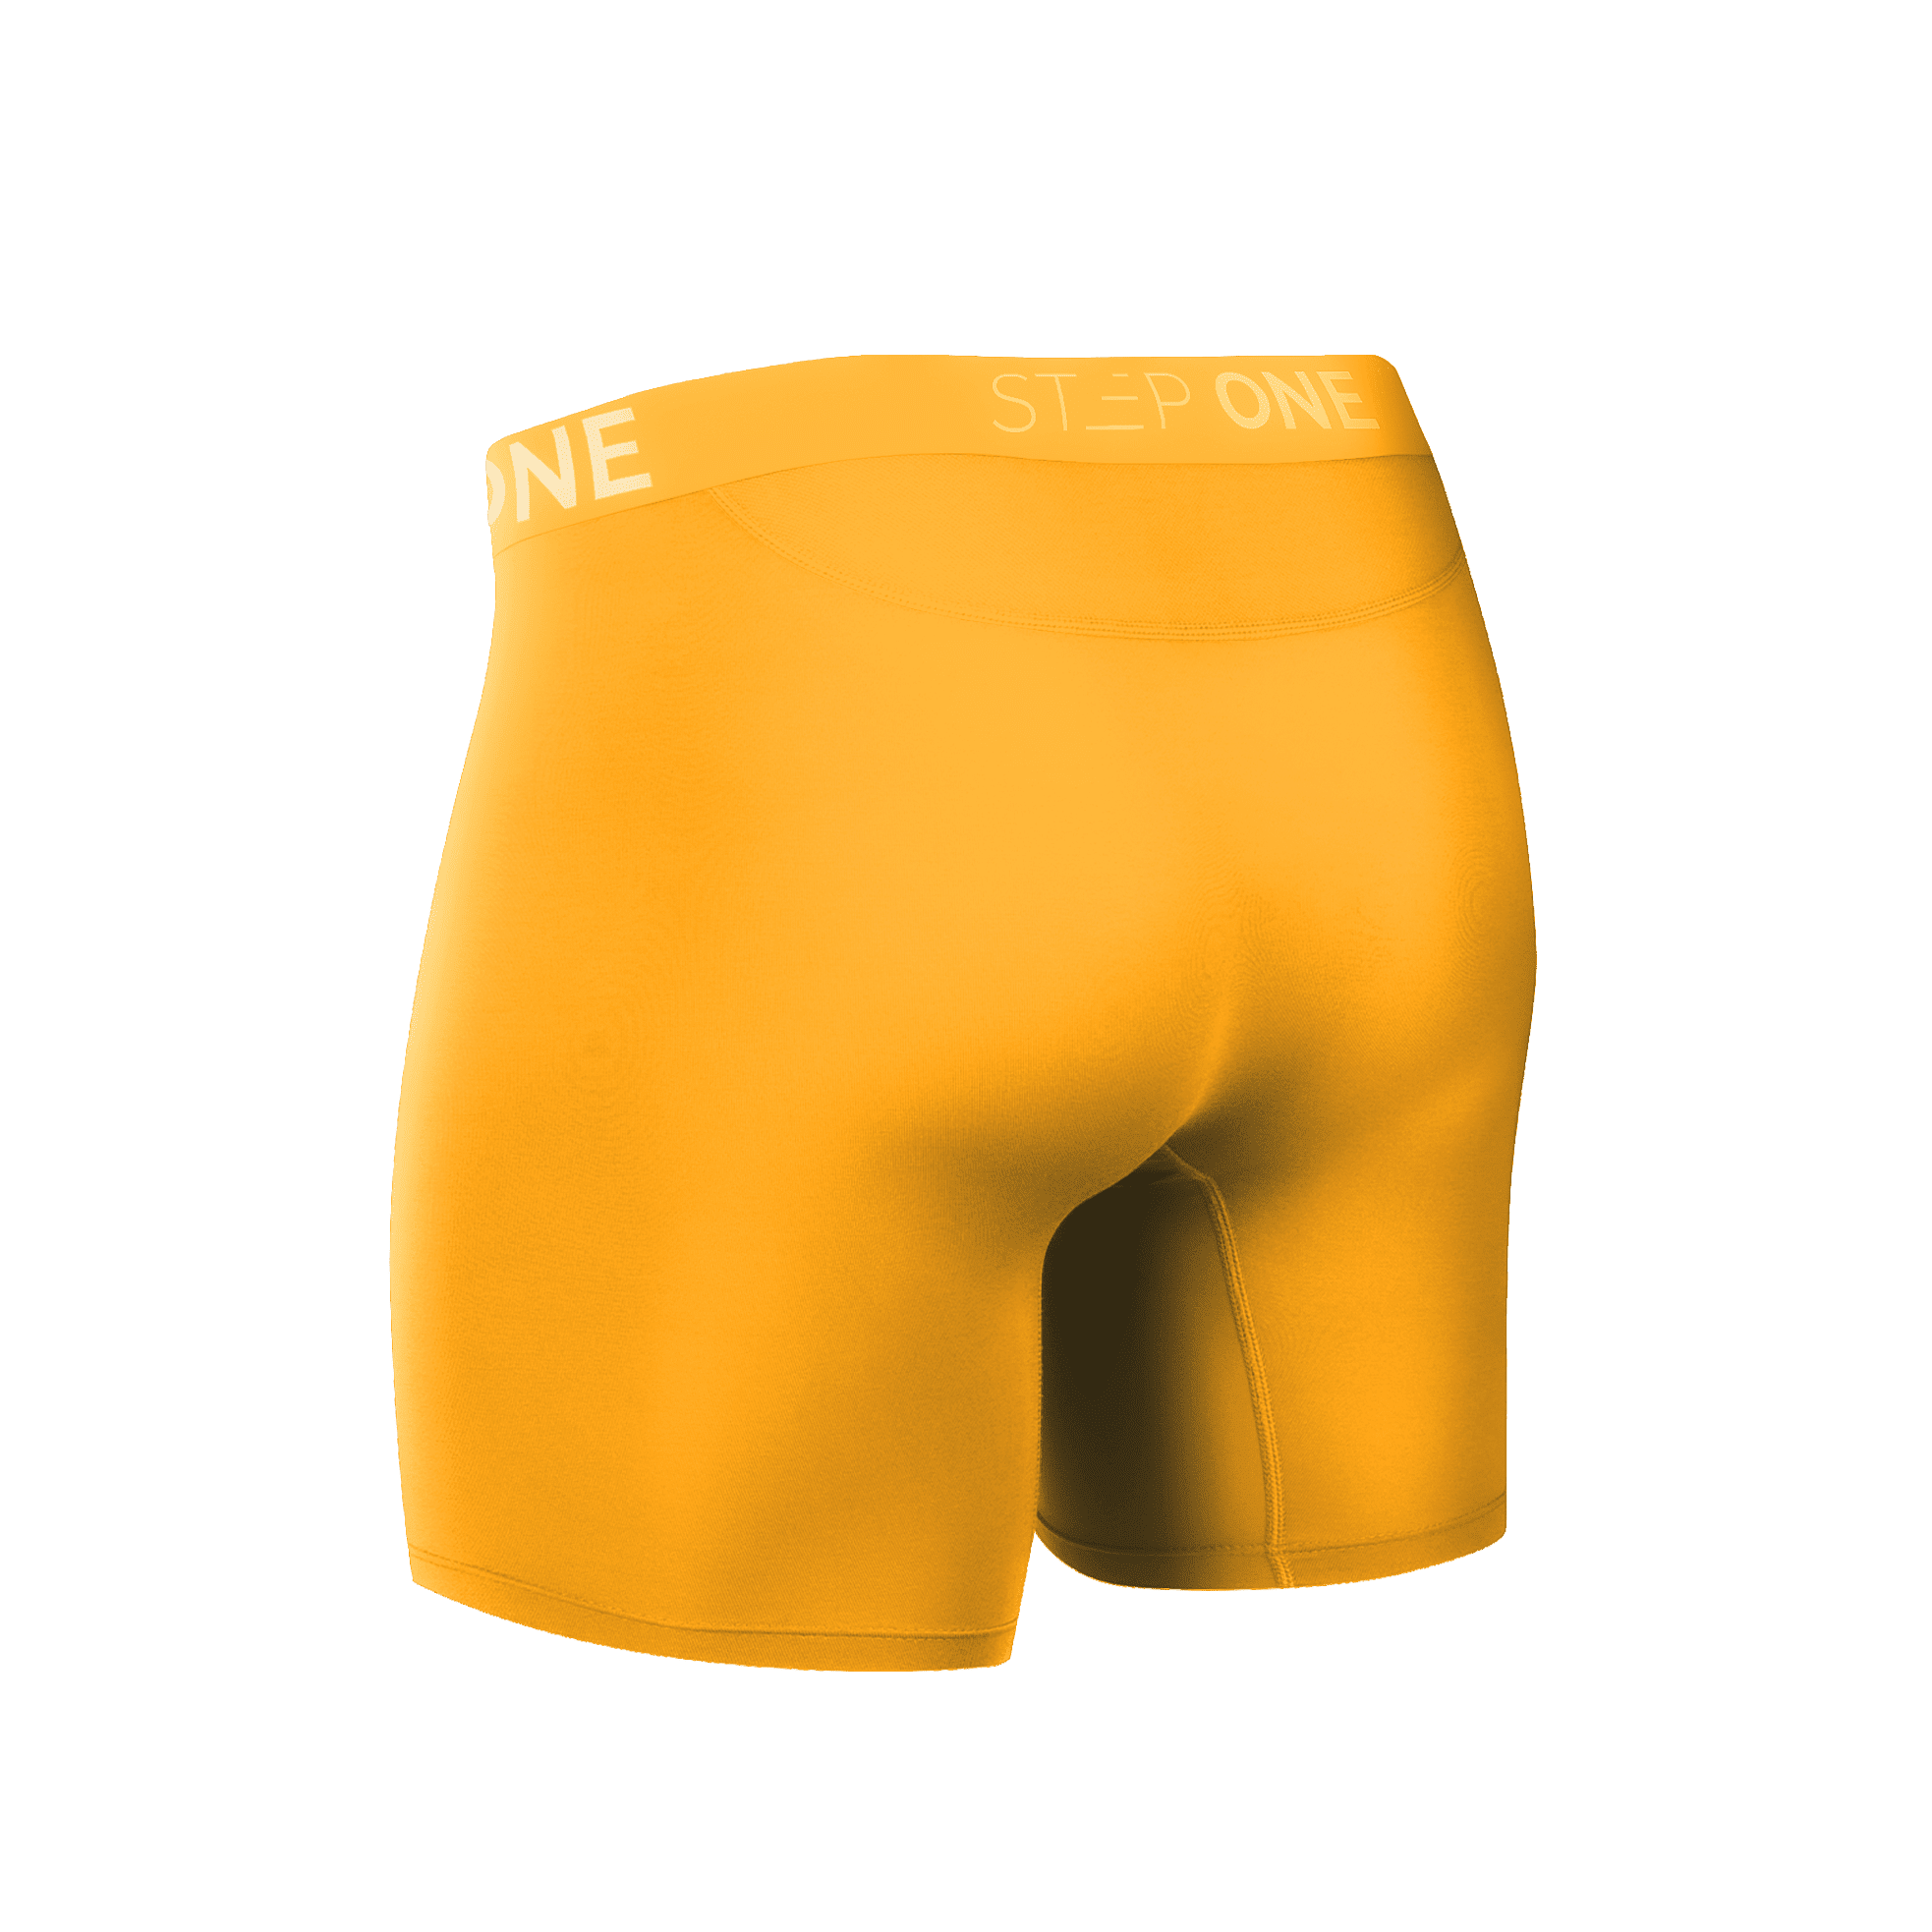 Boxer Brief - Blowfish  Step One Men's Underwear UK